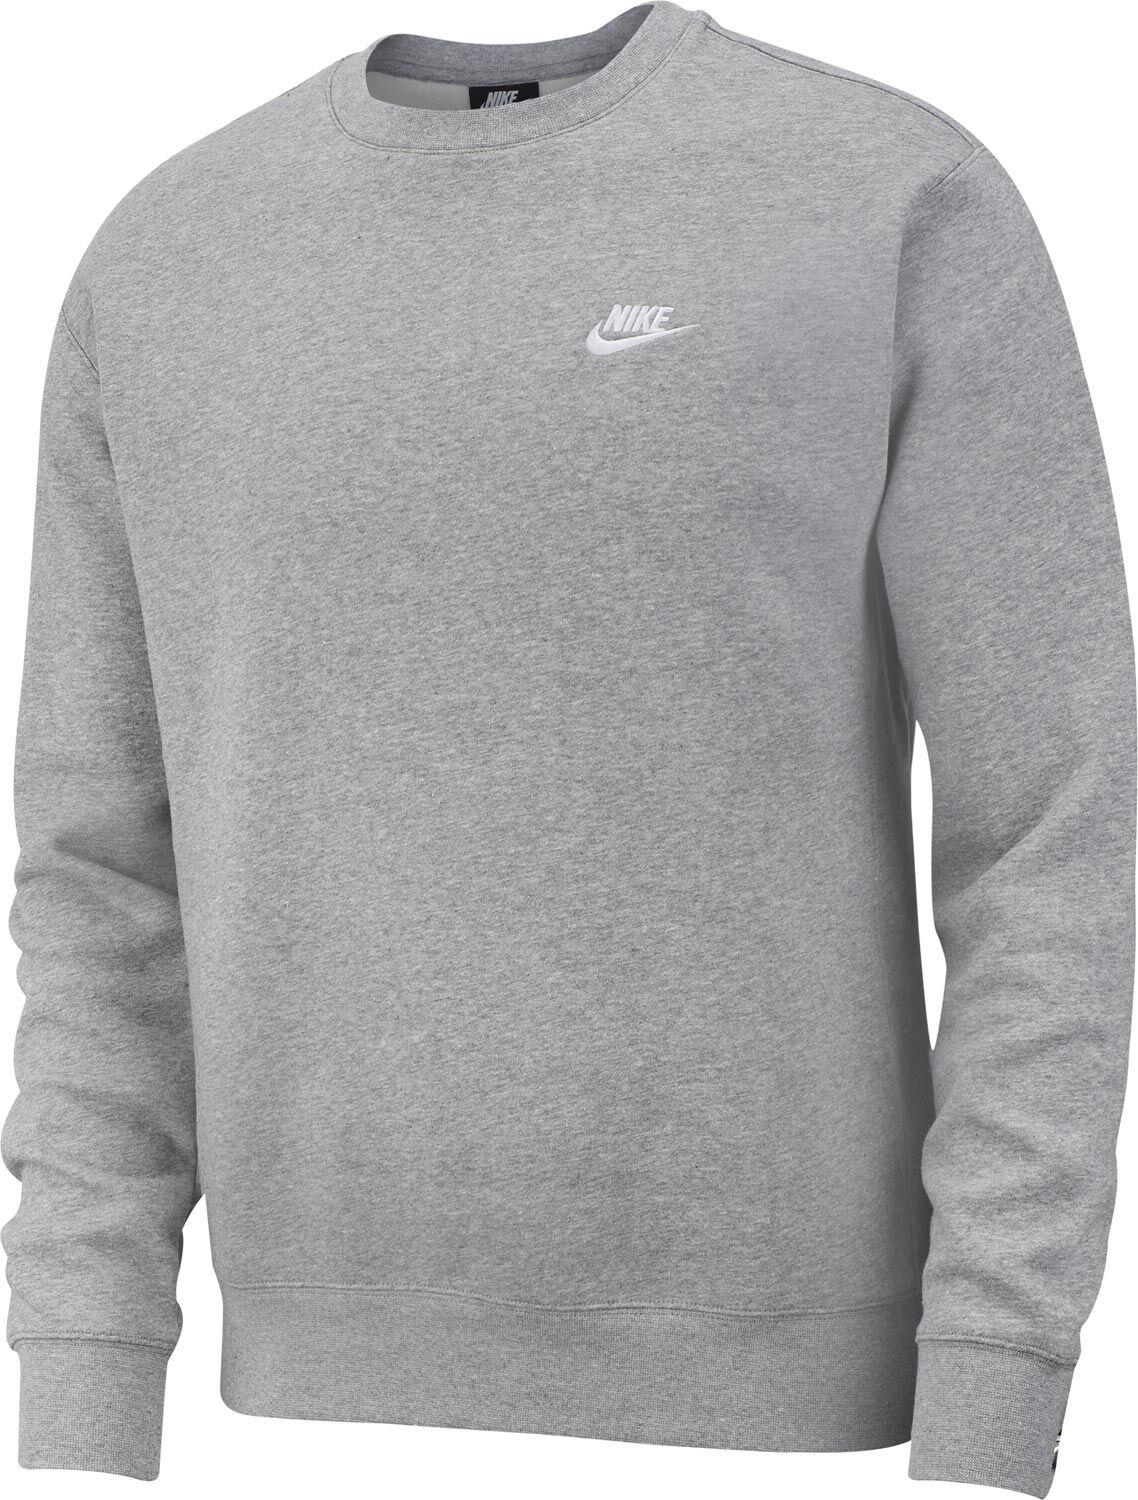 lezing levend crisis Pullover für Herren von Nike in grau im Online Shop von SportScheck kaufen